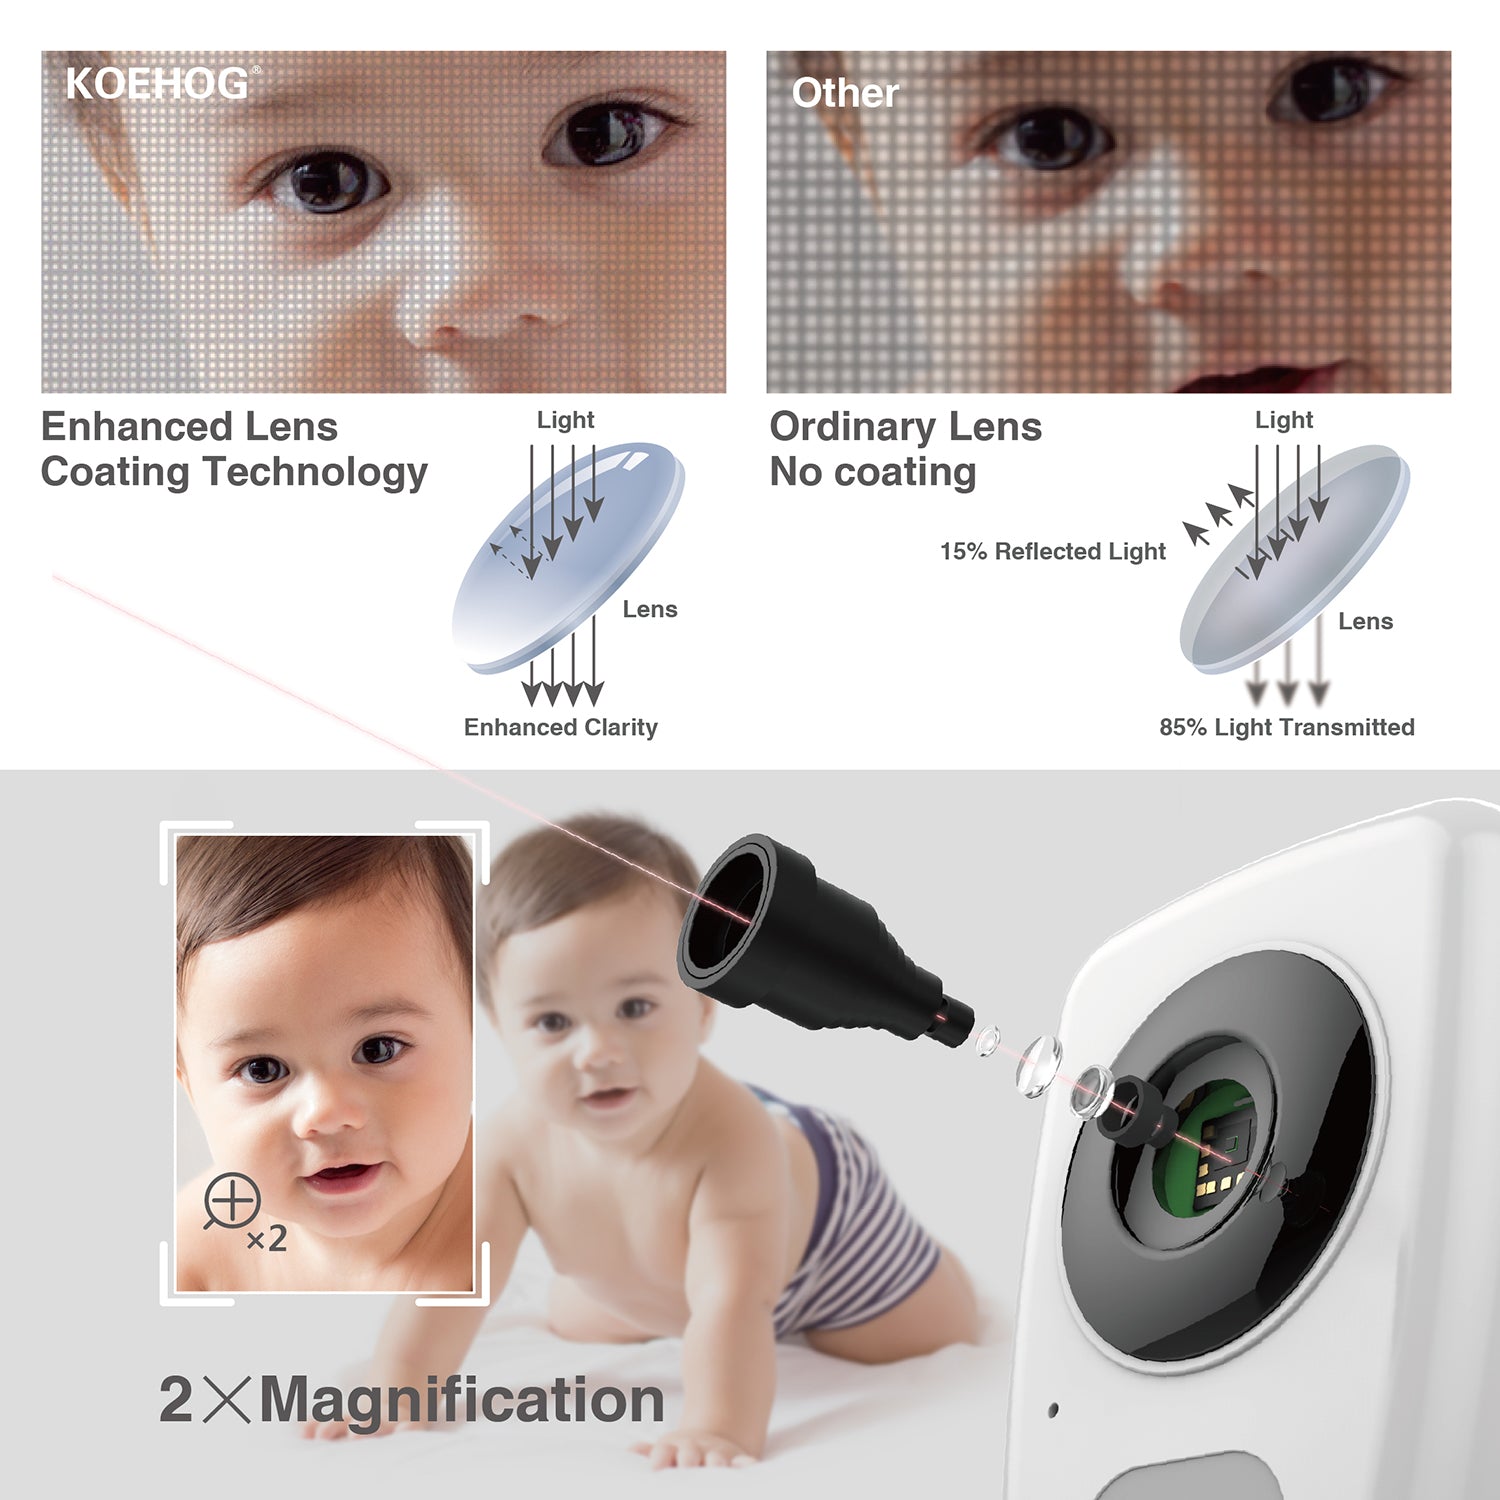 KOEHOG	K820 Video Baby Monitor